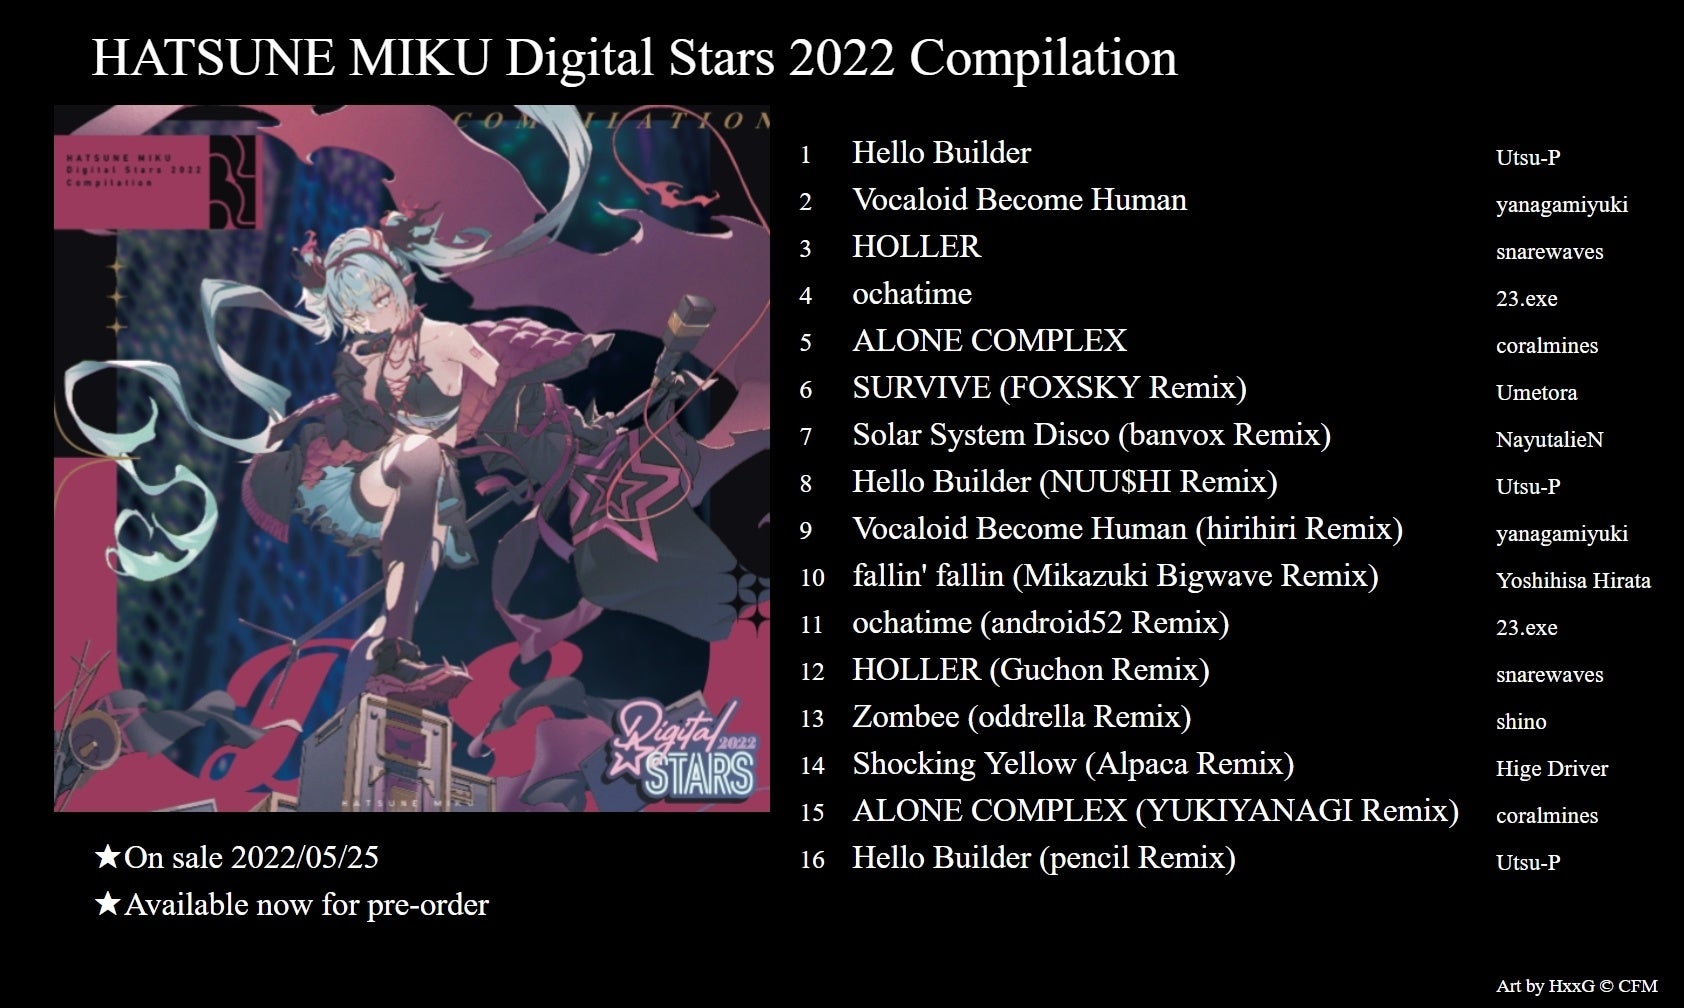 国内外の音楽クリエイターによるコンピレーションCDアルバム「HATSUNE MIKU Digital Stars 2022 Compilation」2022年5月25日（水）発売！